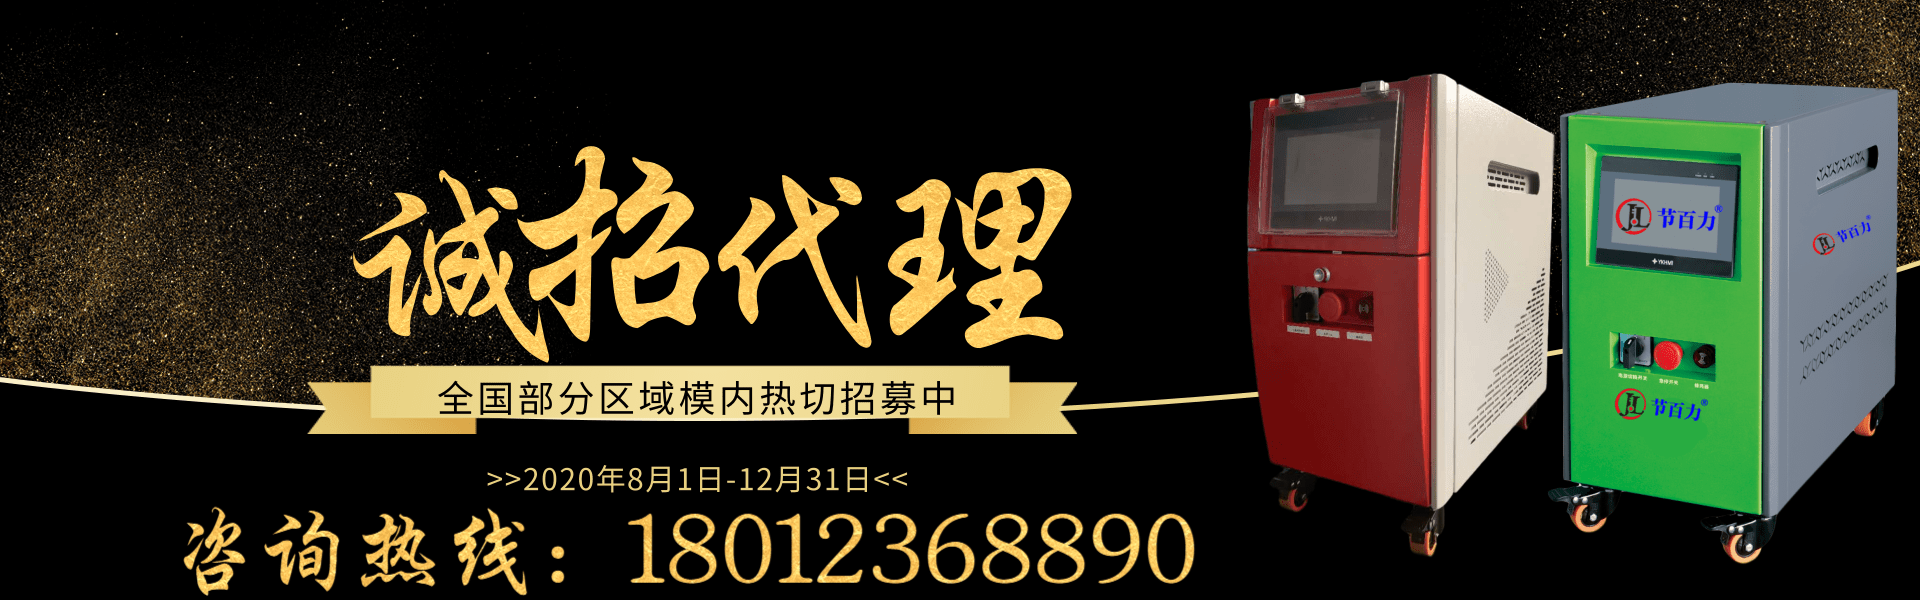 黑金风代理招募宣传PC端banner@凡科快图.png